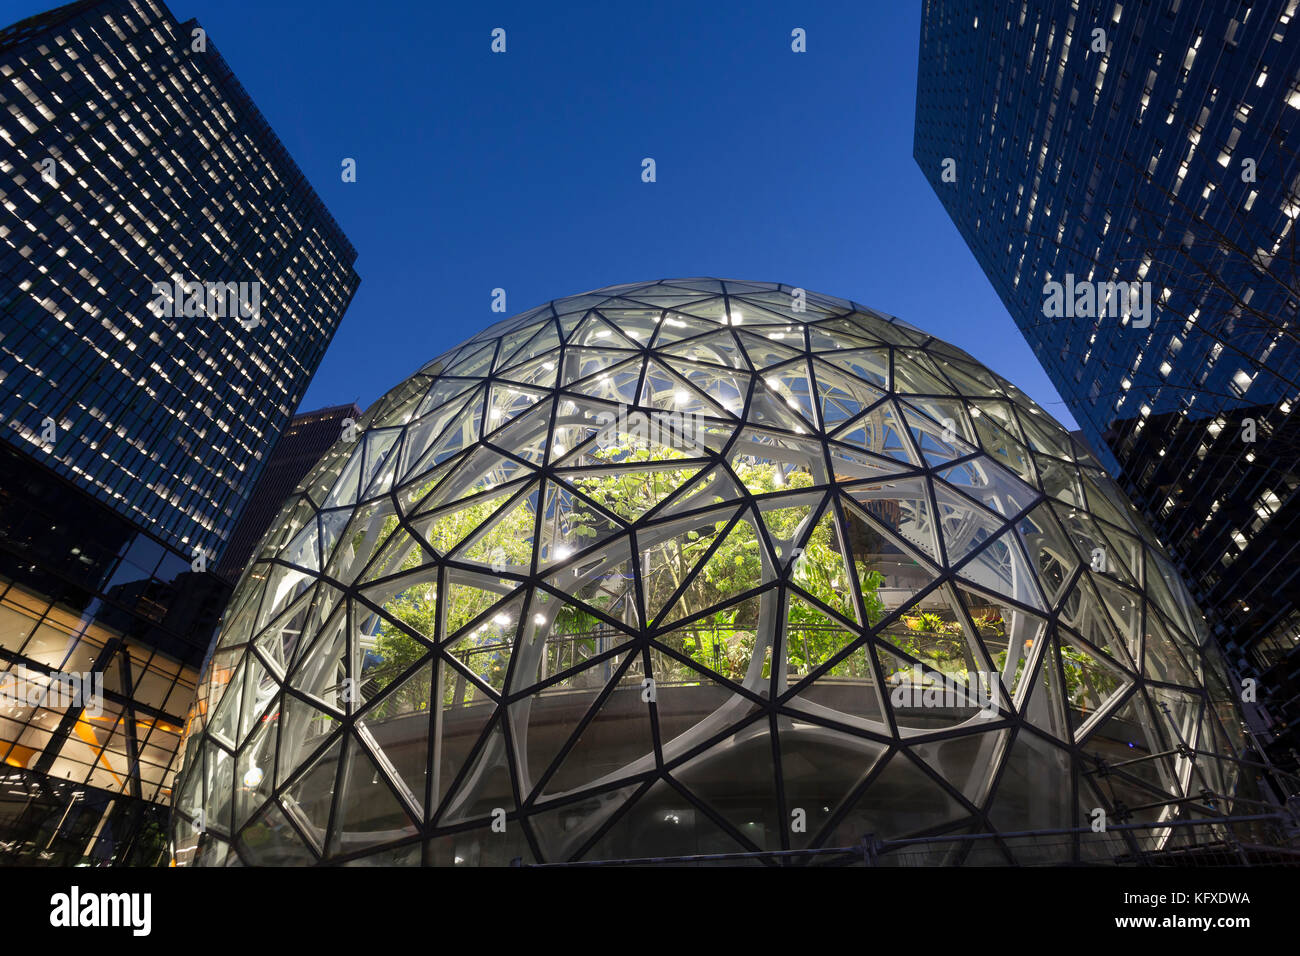 Seattle, Washington: Der amazon Sphären im Bau an der Amazon urban Campus  im belltown Nachbarschaft. Die geodätischen Strukturen, die Wil  Stockfotografie - Alamy